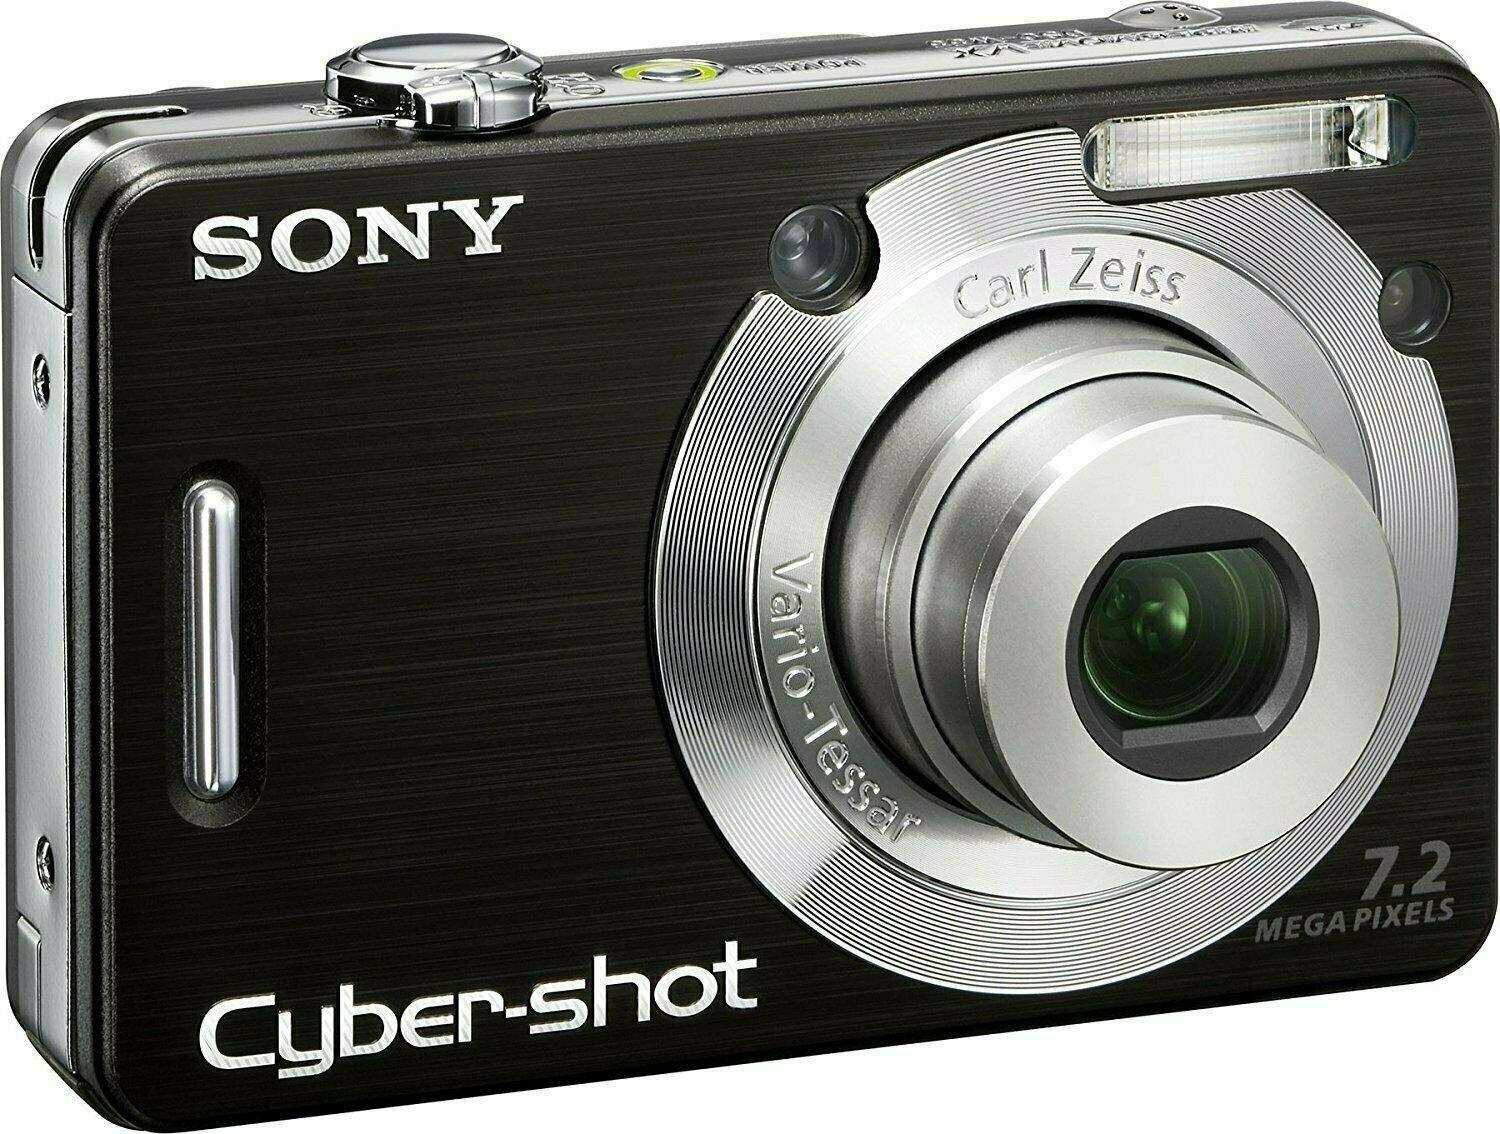 Sony Cyber-shot DSC-W55 | Full Specifications